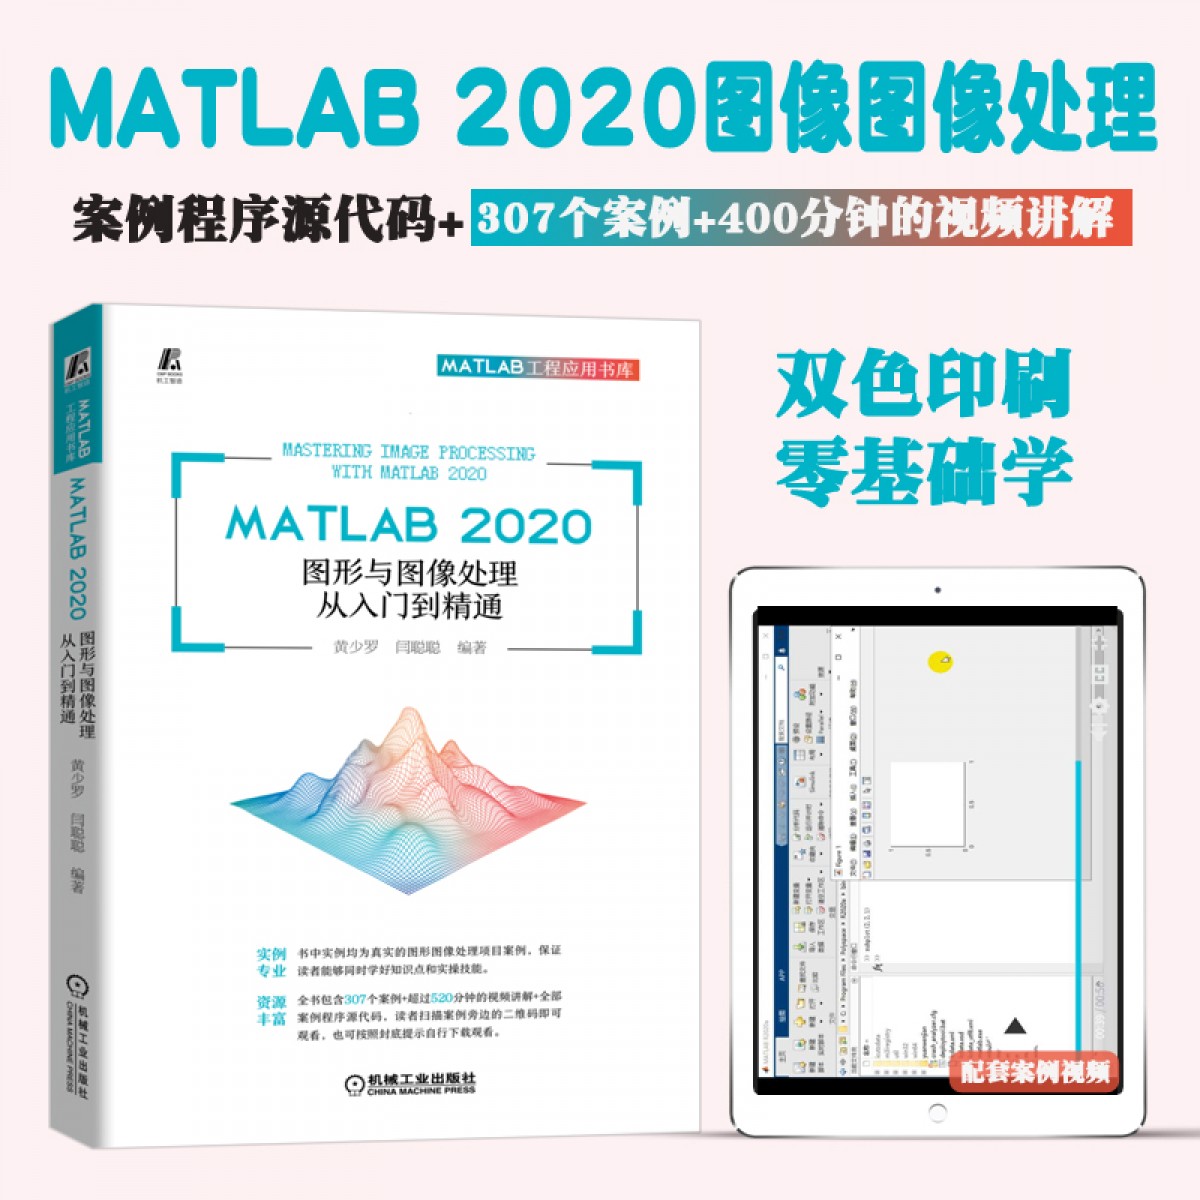 【视频教学】MATLAB 2020图形与图像处理从入门到精通 matlab教程书籍 MATLAB图像处理技术图像变换图像压缩编码图像增强技术教材【MATLAB2020】图像与图像处理当前正在查看的商品